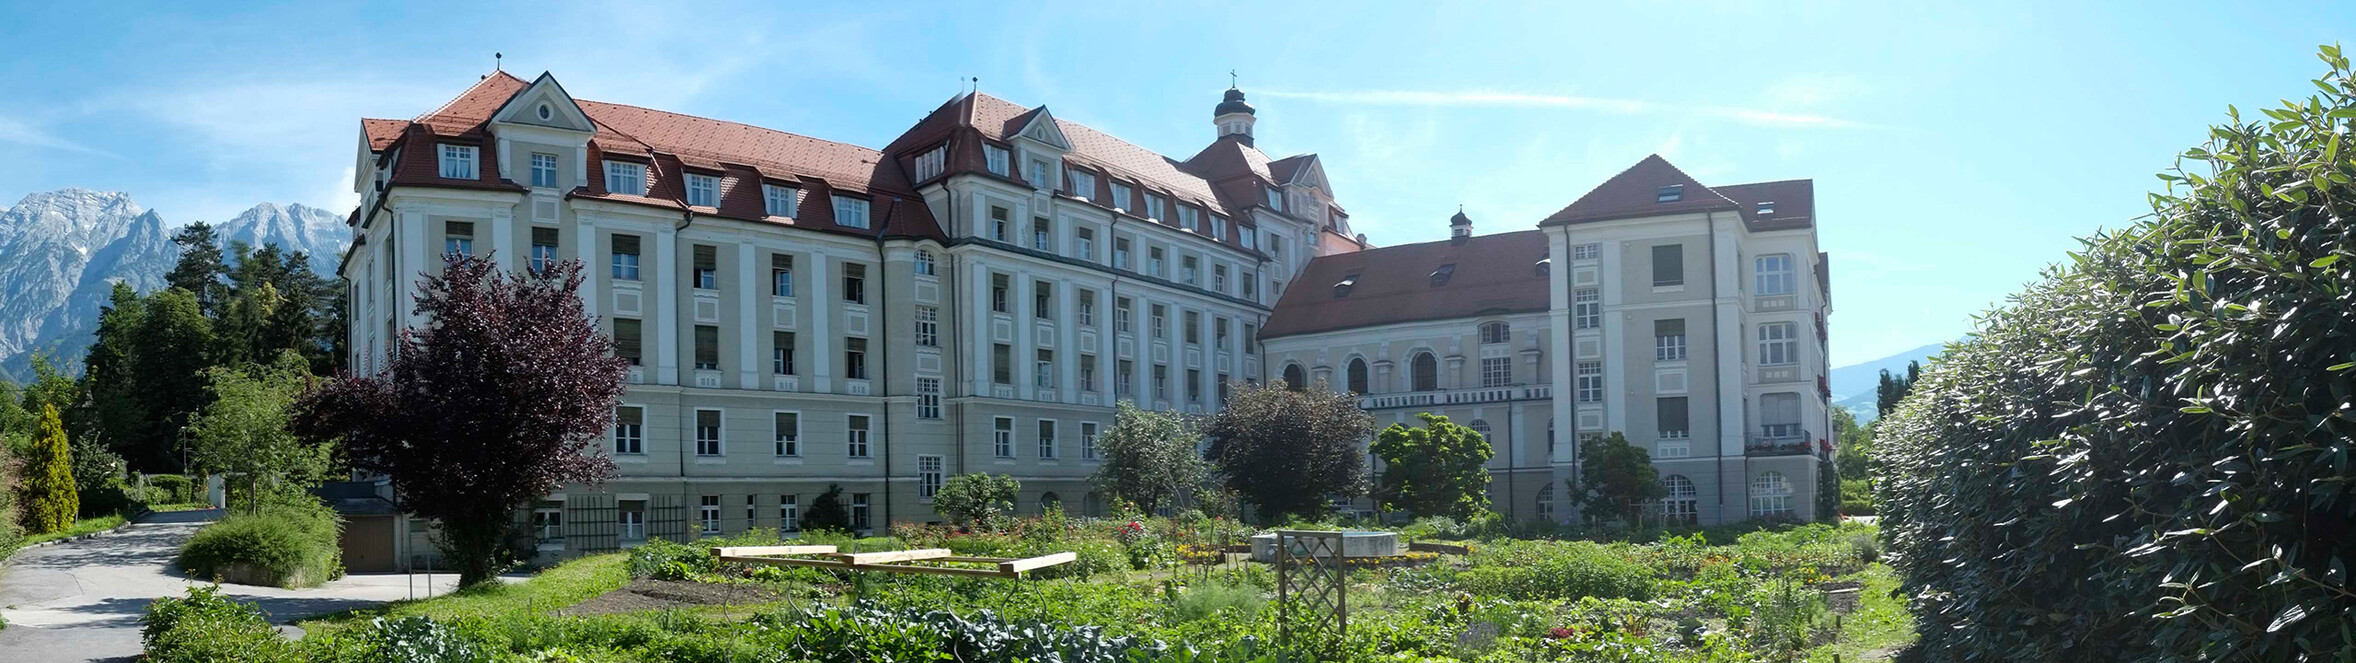 Kloster St. Elisabeth der Kreuzschwestern in Hall im Tirol